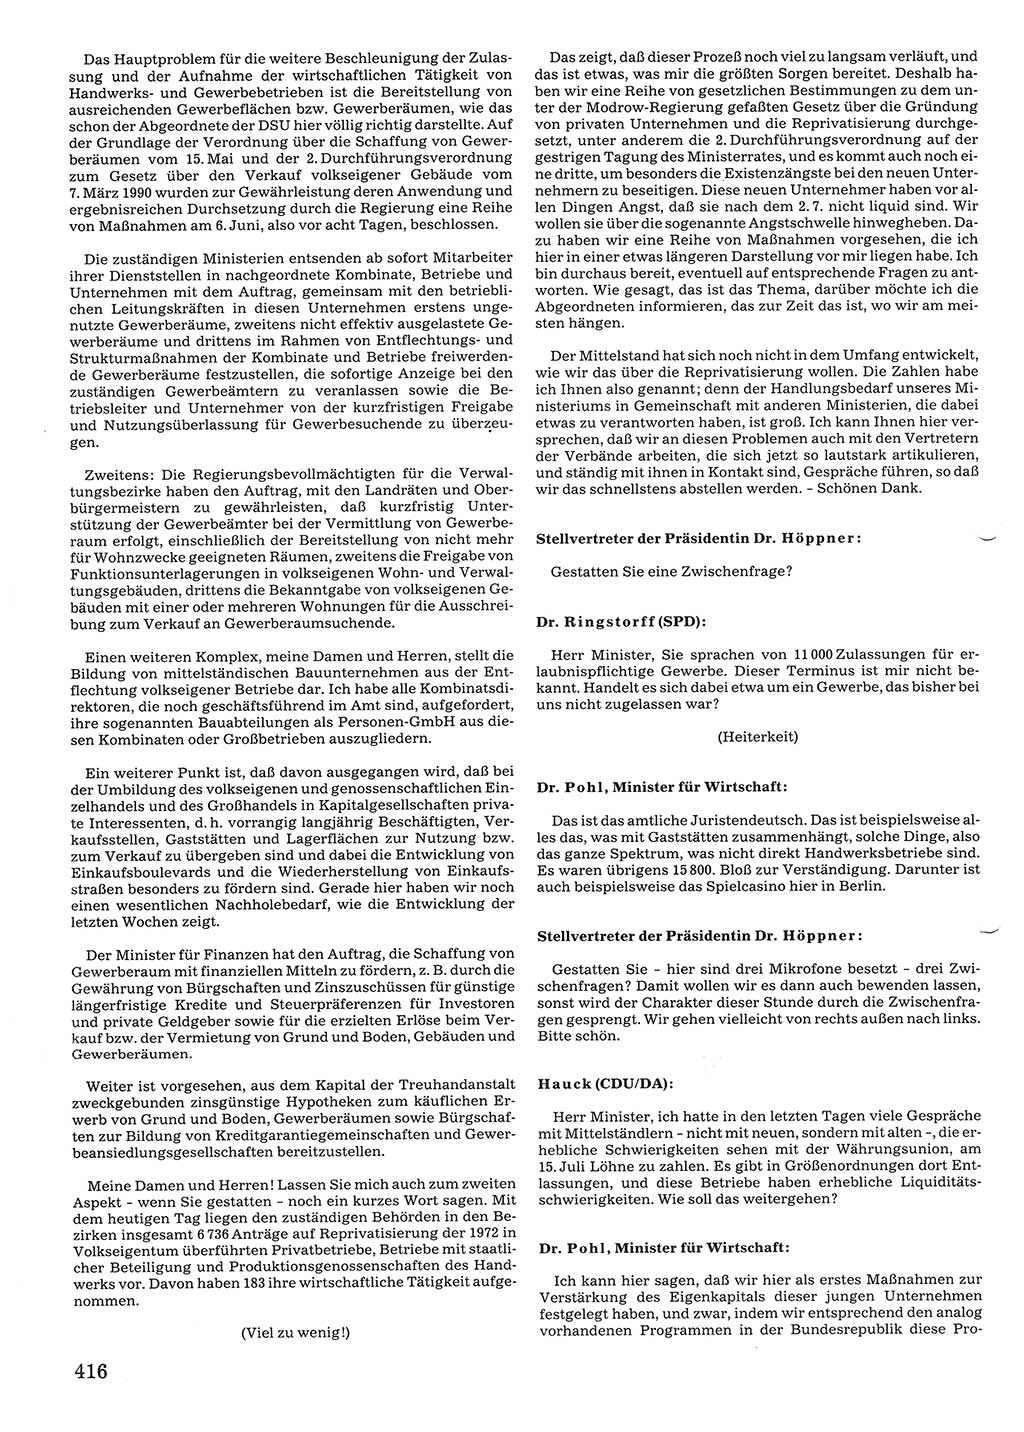 Tagungen der Volkskammer (VK) der Deutschen Demokratischen Republik (DDR), 10. Wahlperiode 1990, Seite 416 (VK. DDR 10. WP. 1990, Prot. Tg. 1-38, 5.4.-2.10.1990, S. 416)